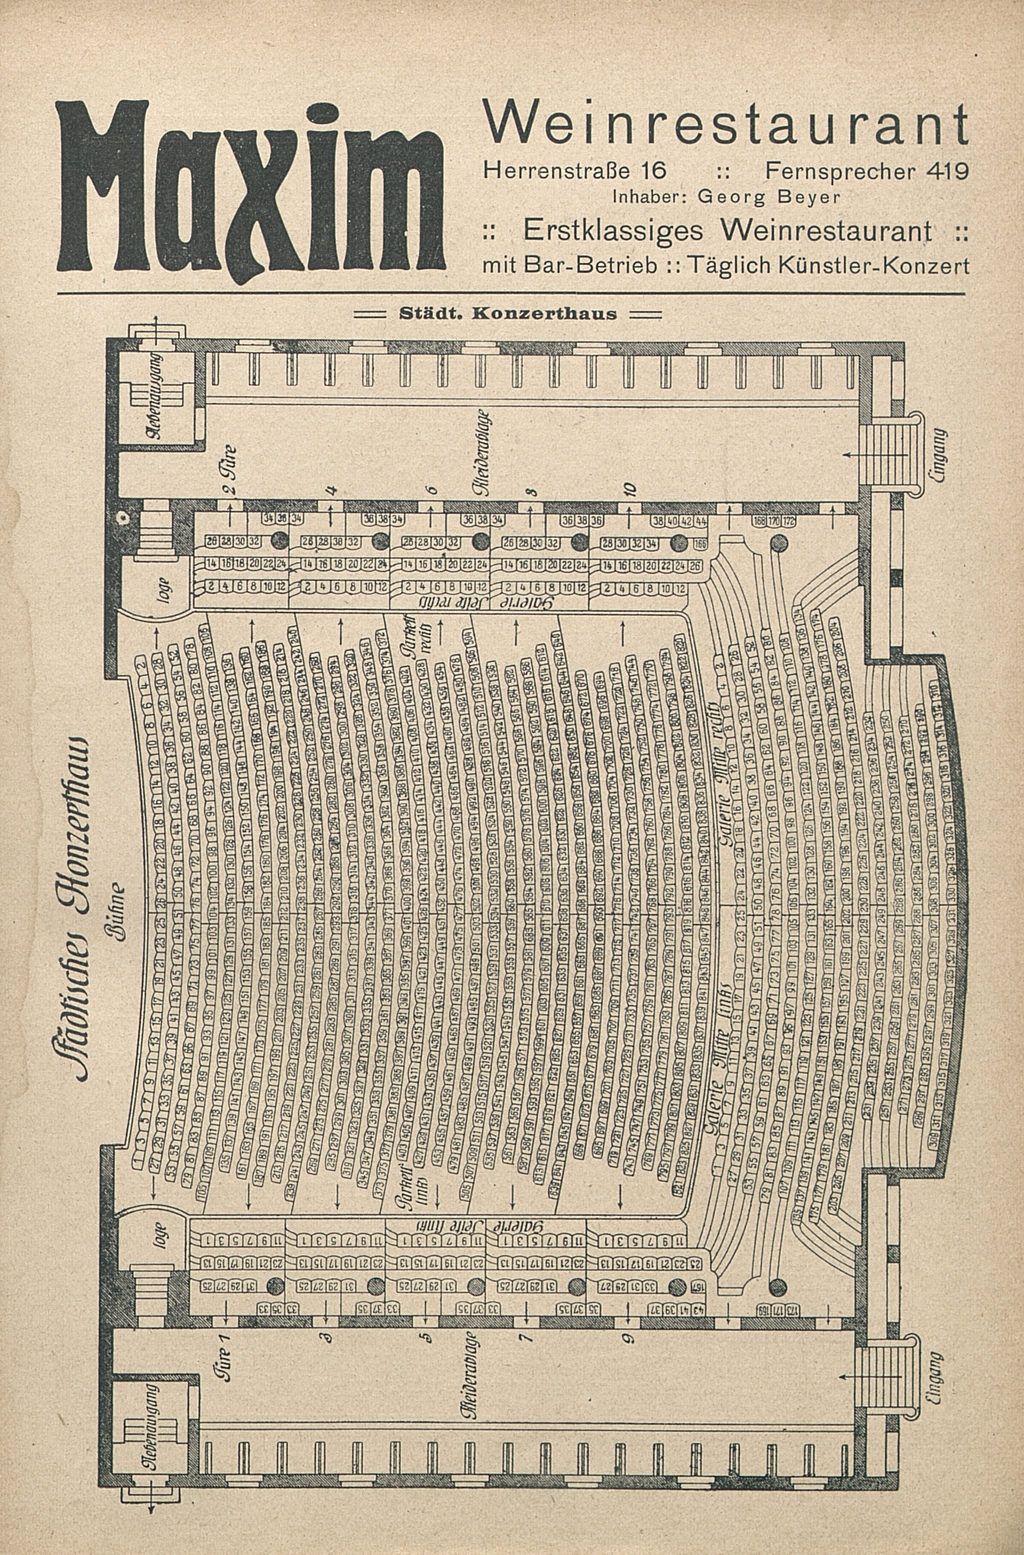 Zu sehen ist der Sitzplan des Städtischen Konzerthauses Karlsruhe 1918.